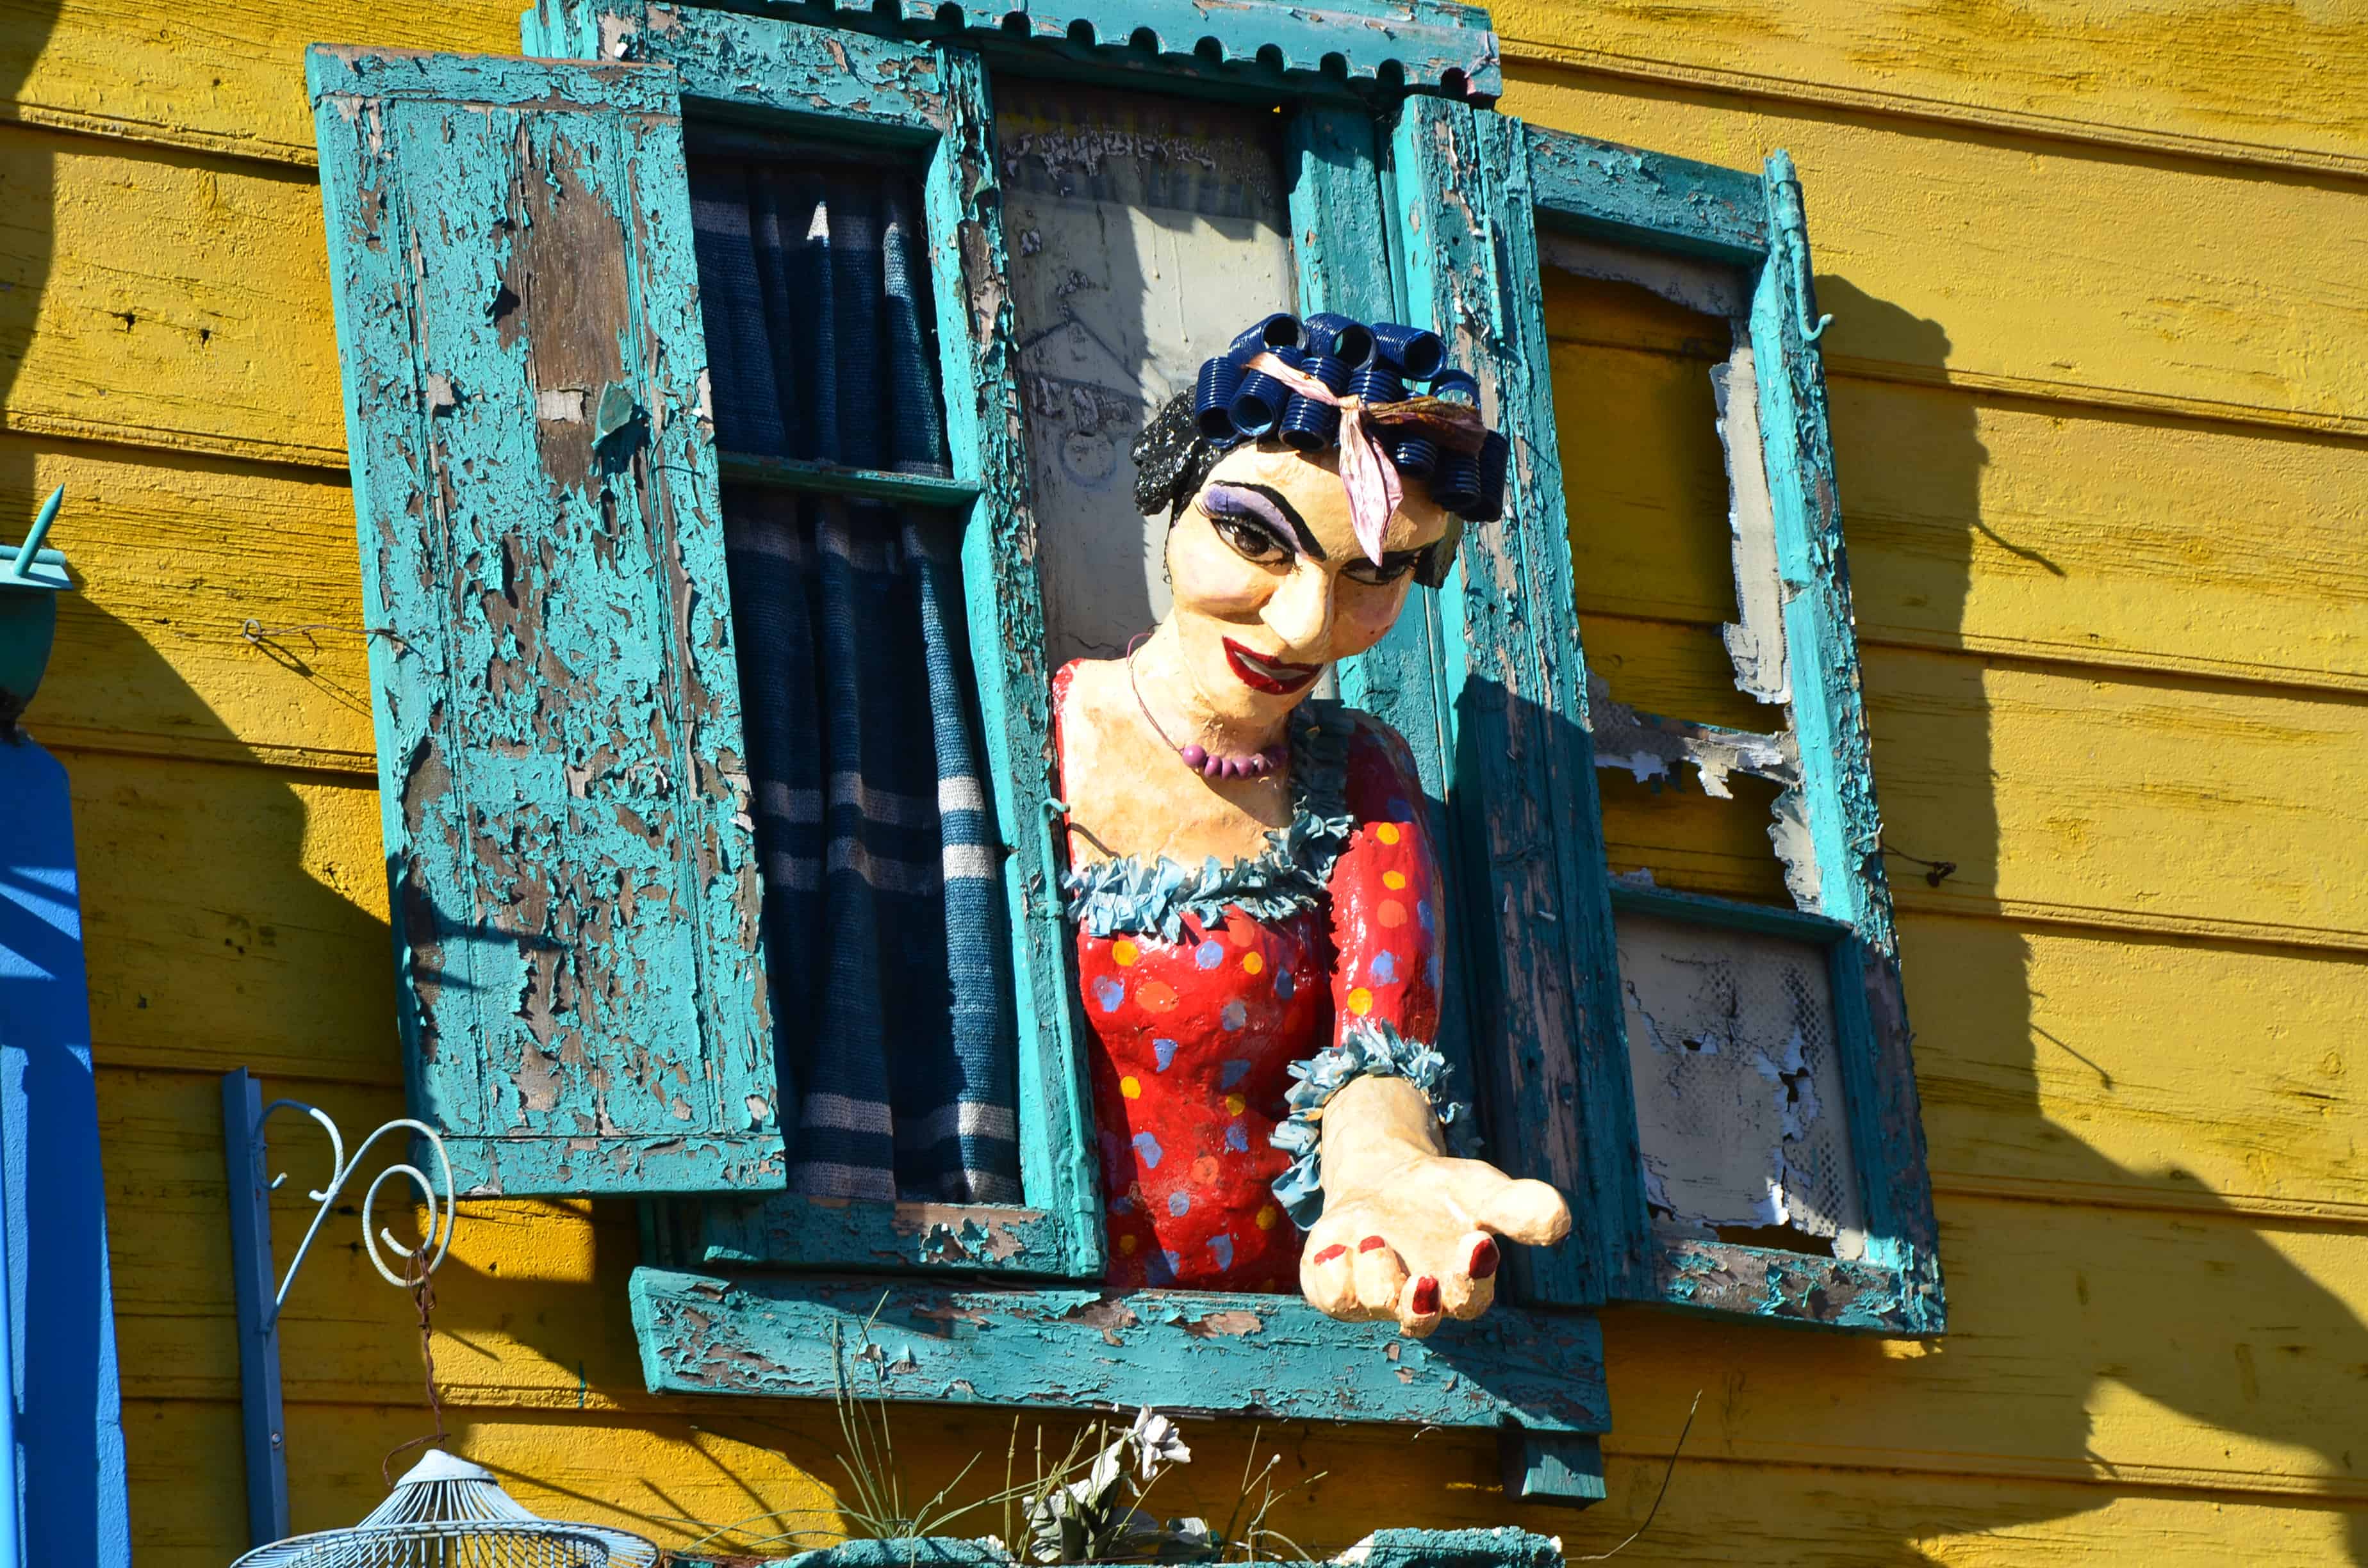 Figure of a prostitute in La Boca, Buenos Aires, Argentina